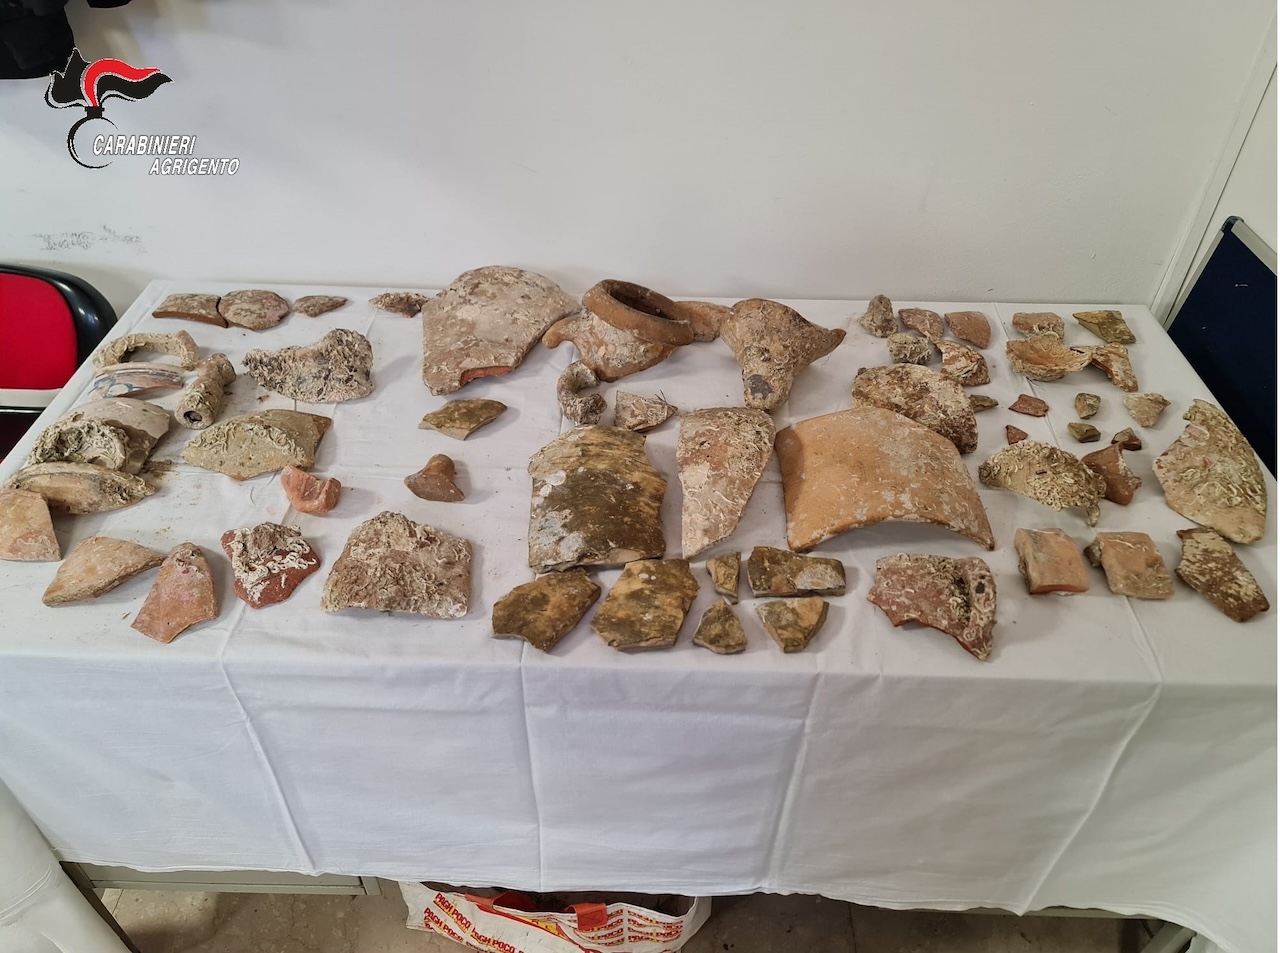 Sequestrati reperti archeologici dentro un sacchetto abbandonato sul porto di Agrigento